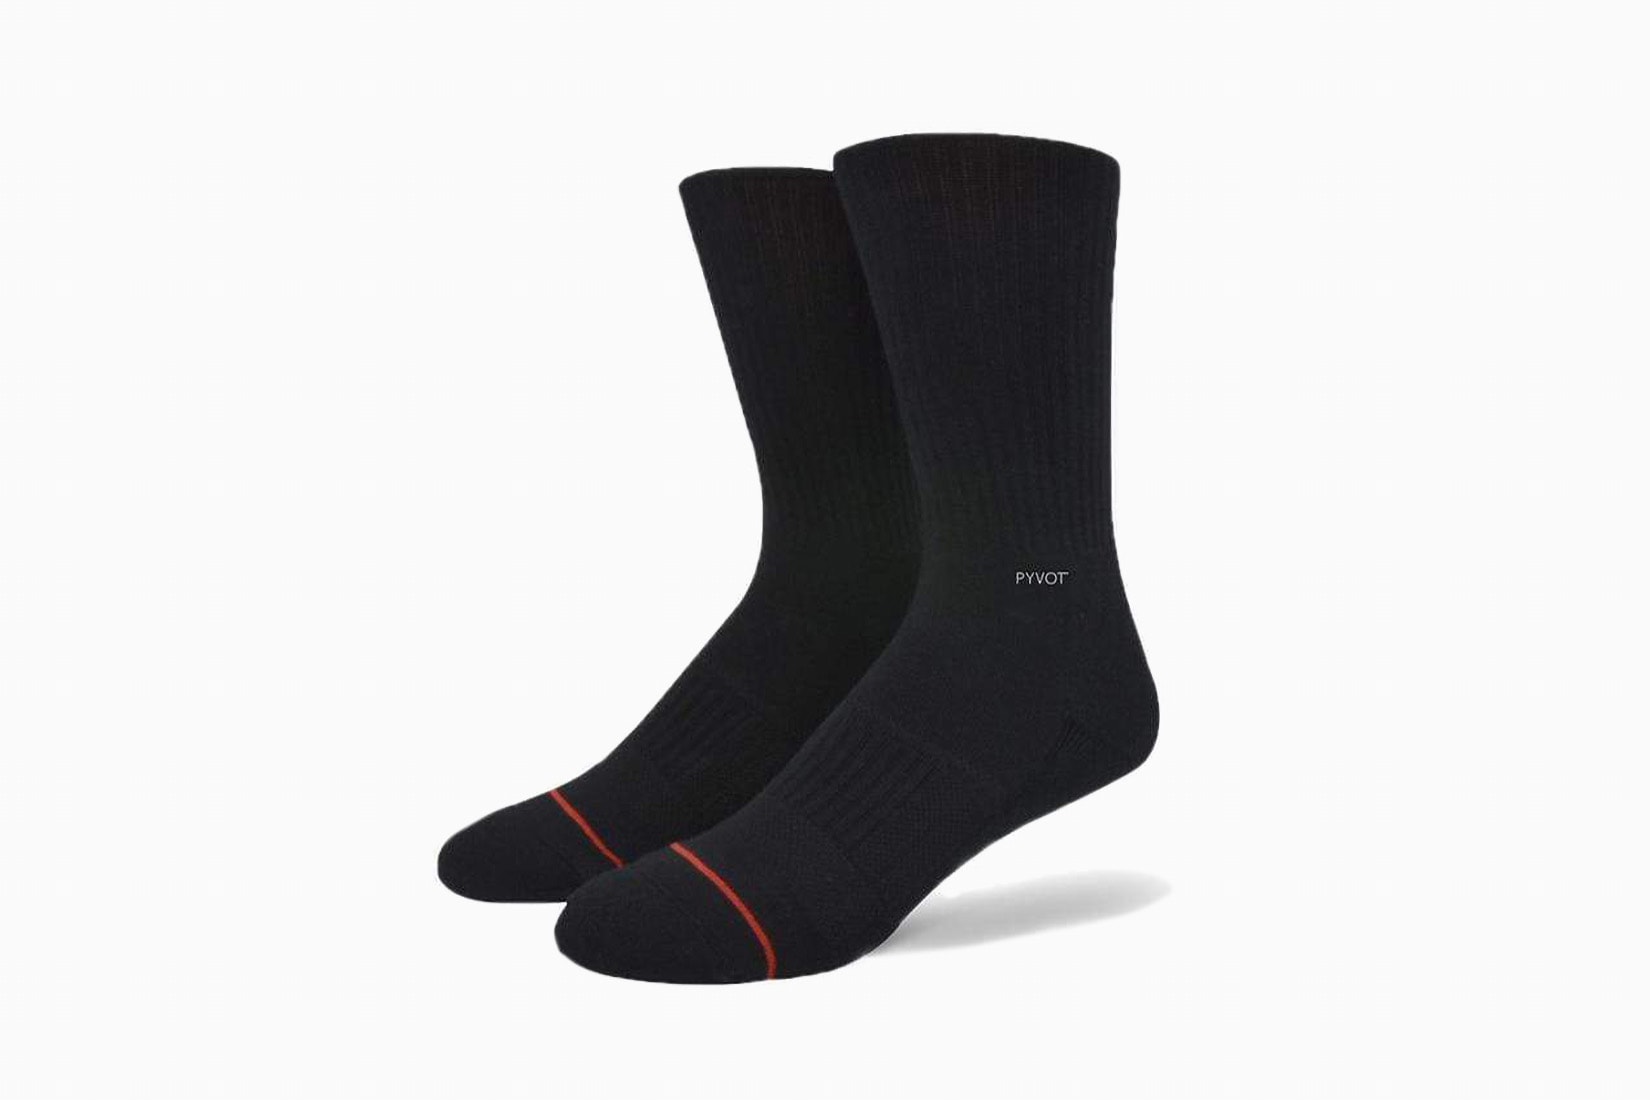 best socks men ankle pyvot review - Luxe Digital